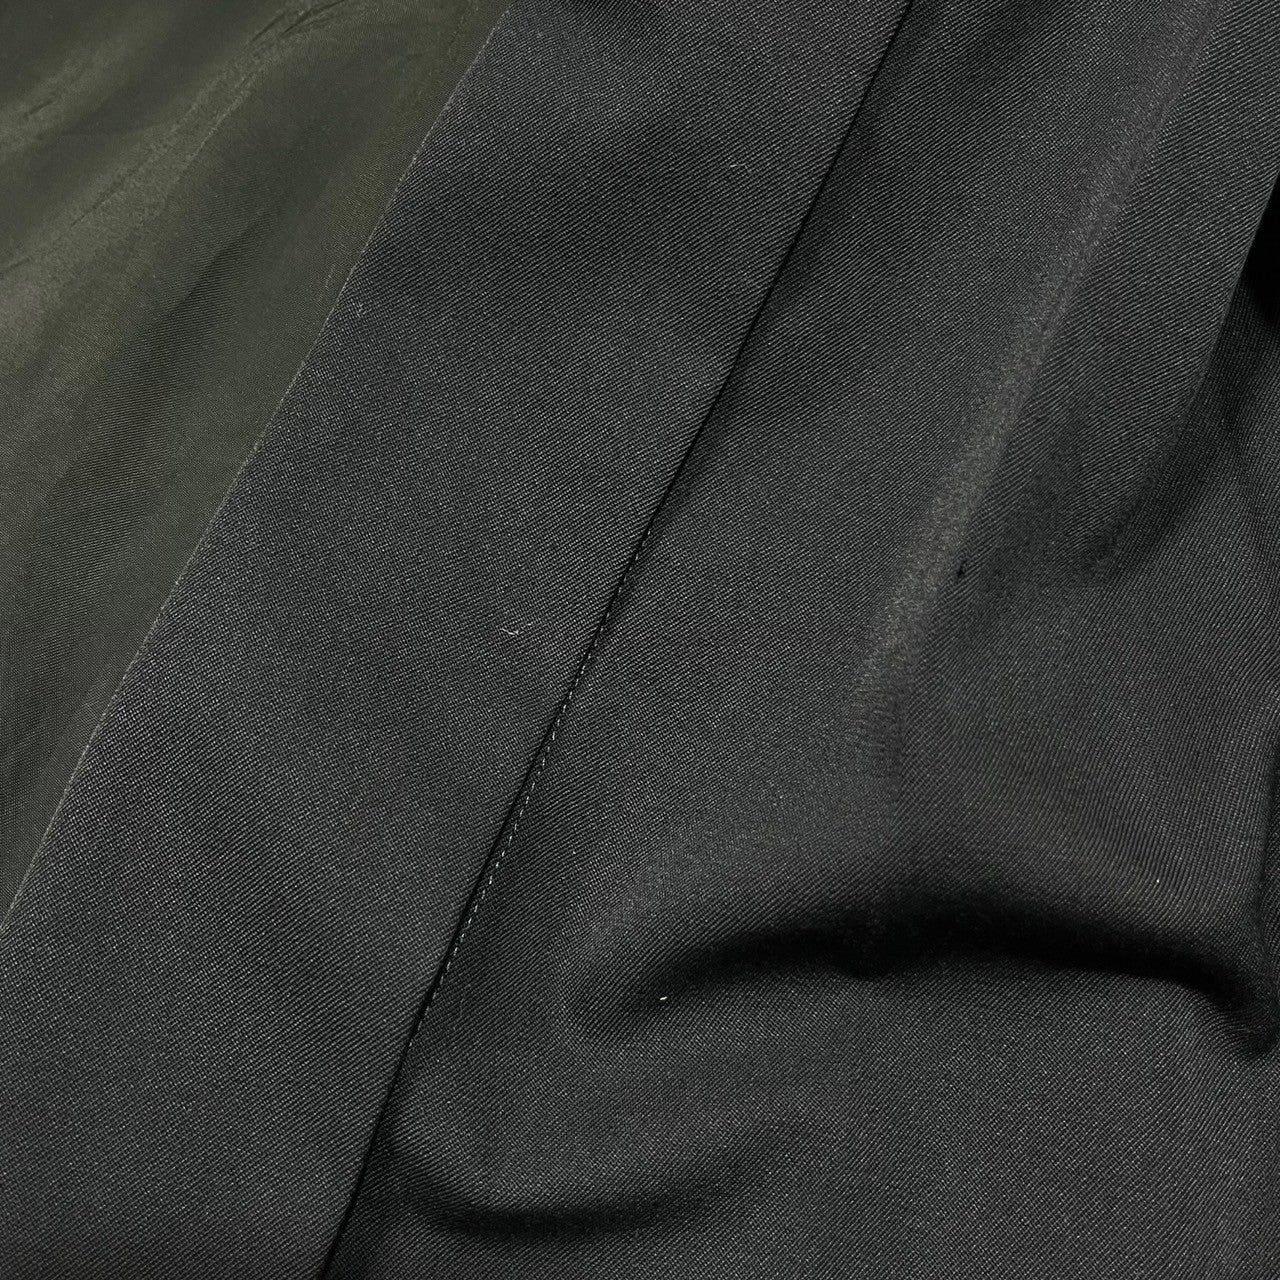 COMME des GARCONS(コムデギャルソン) 11AW wool gabardine docking dress キュプラ 切替 ウール ギャバジン ドッキング ノースリーブ ワンピース ドレス 再構築 GH-O023 S ネイビー×ブラック AD2011